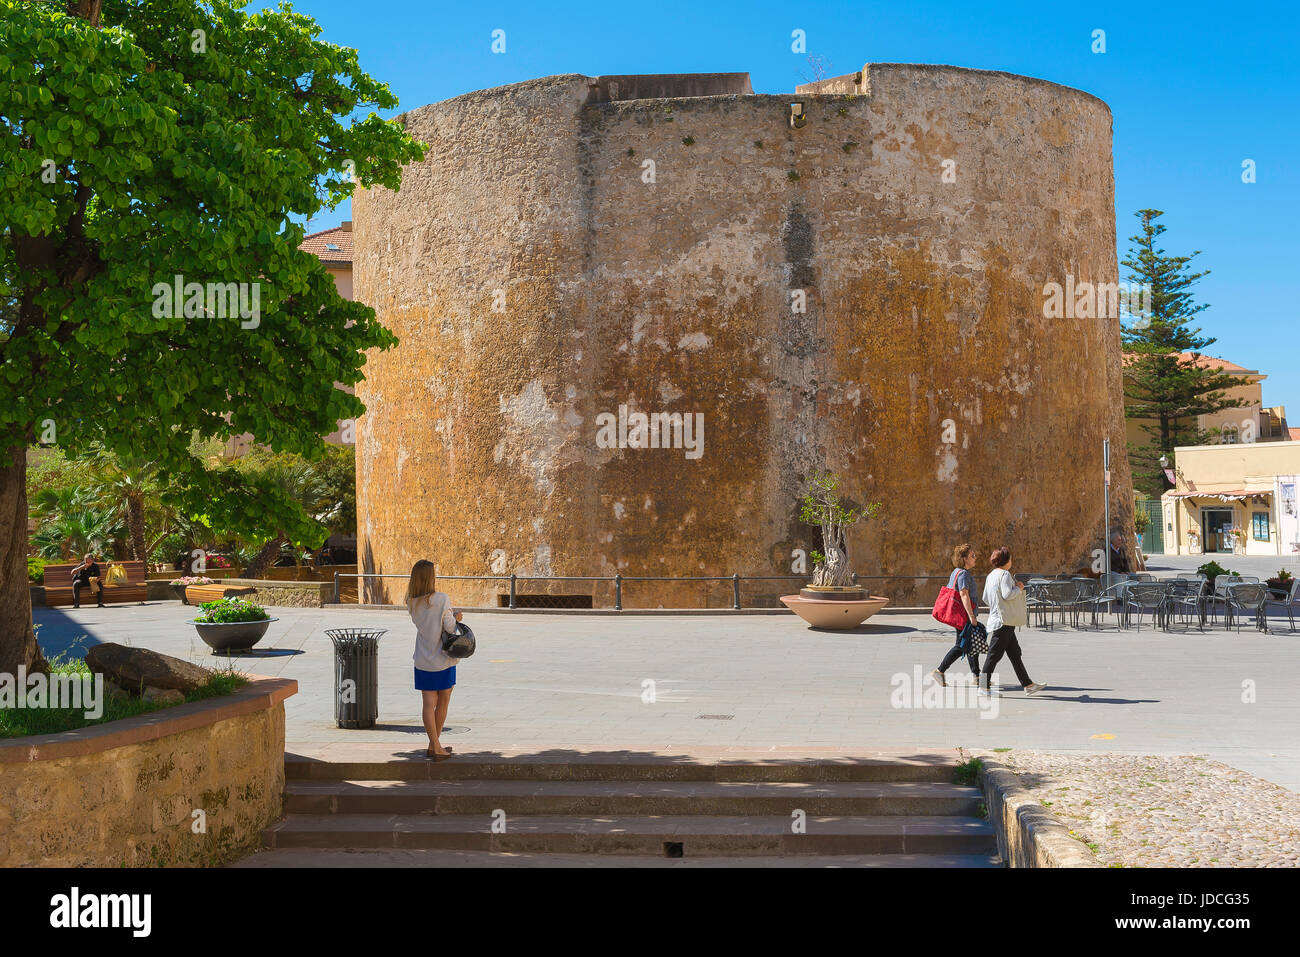 Alghero città vecchia torre, la Torre de Sant Joan - una delle 7 torri medioevali situati nel quartiere della città vecchia di Alghero, Sardegna settentrionale. Foto Stock